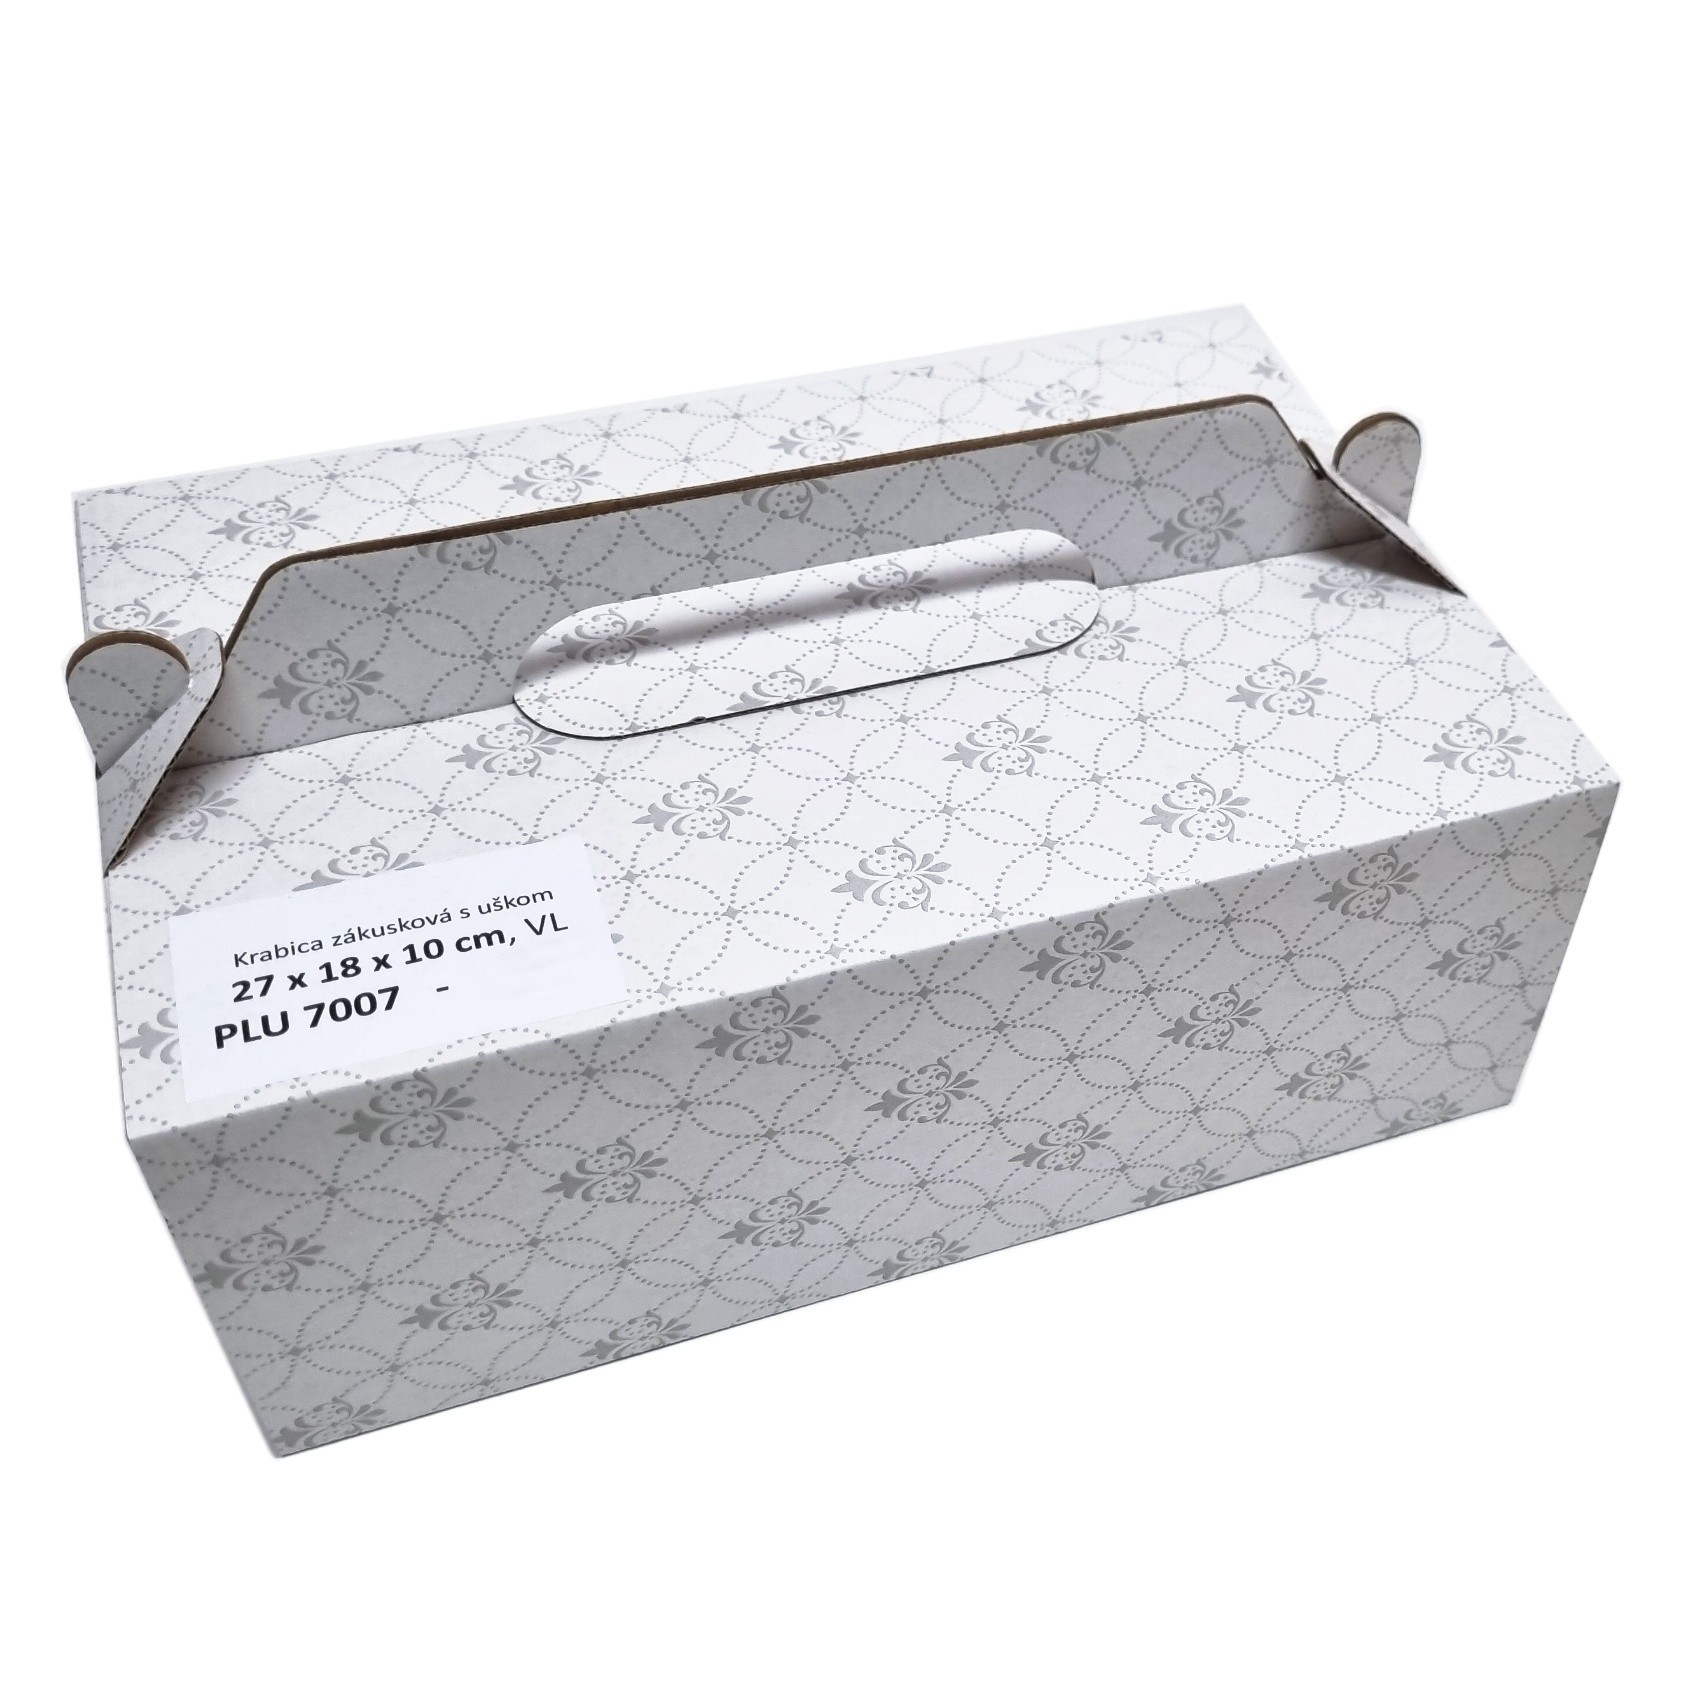 Krabica zákusková s uškom ornament 27x18x10 cm, VL